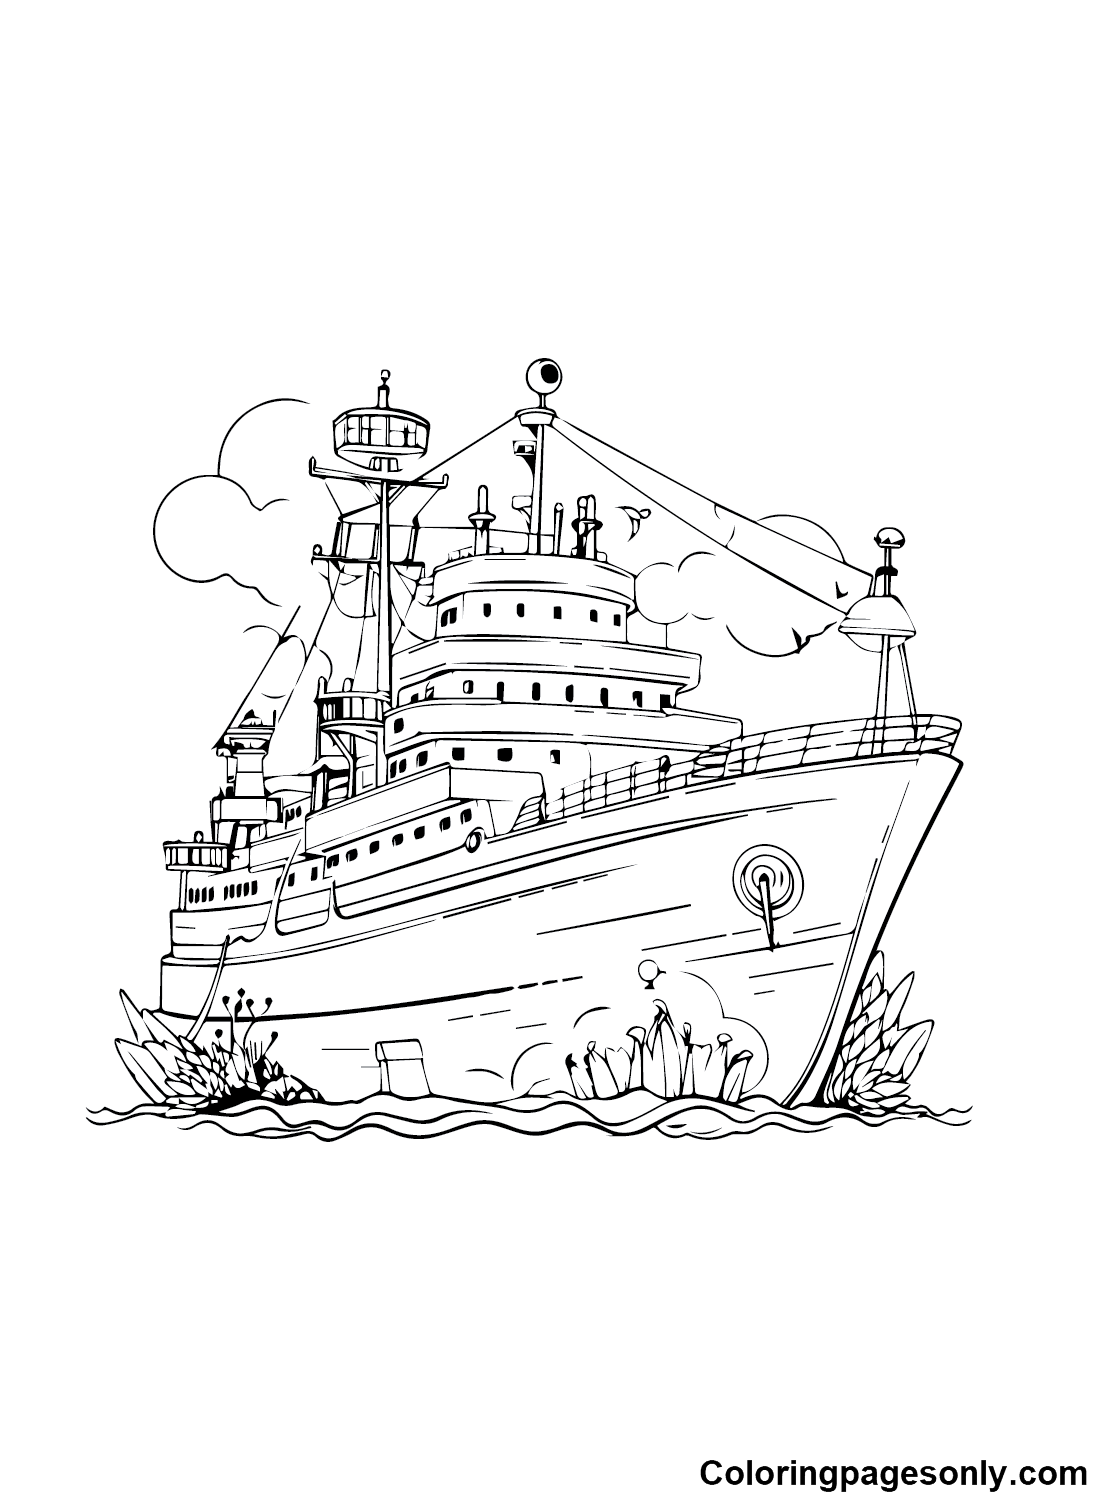 Imágenes de barcos gratis desde el barco